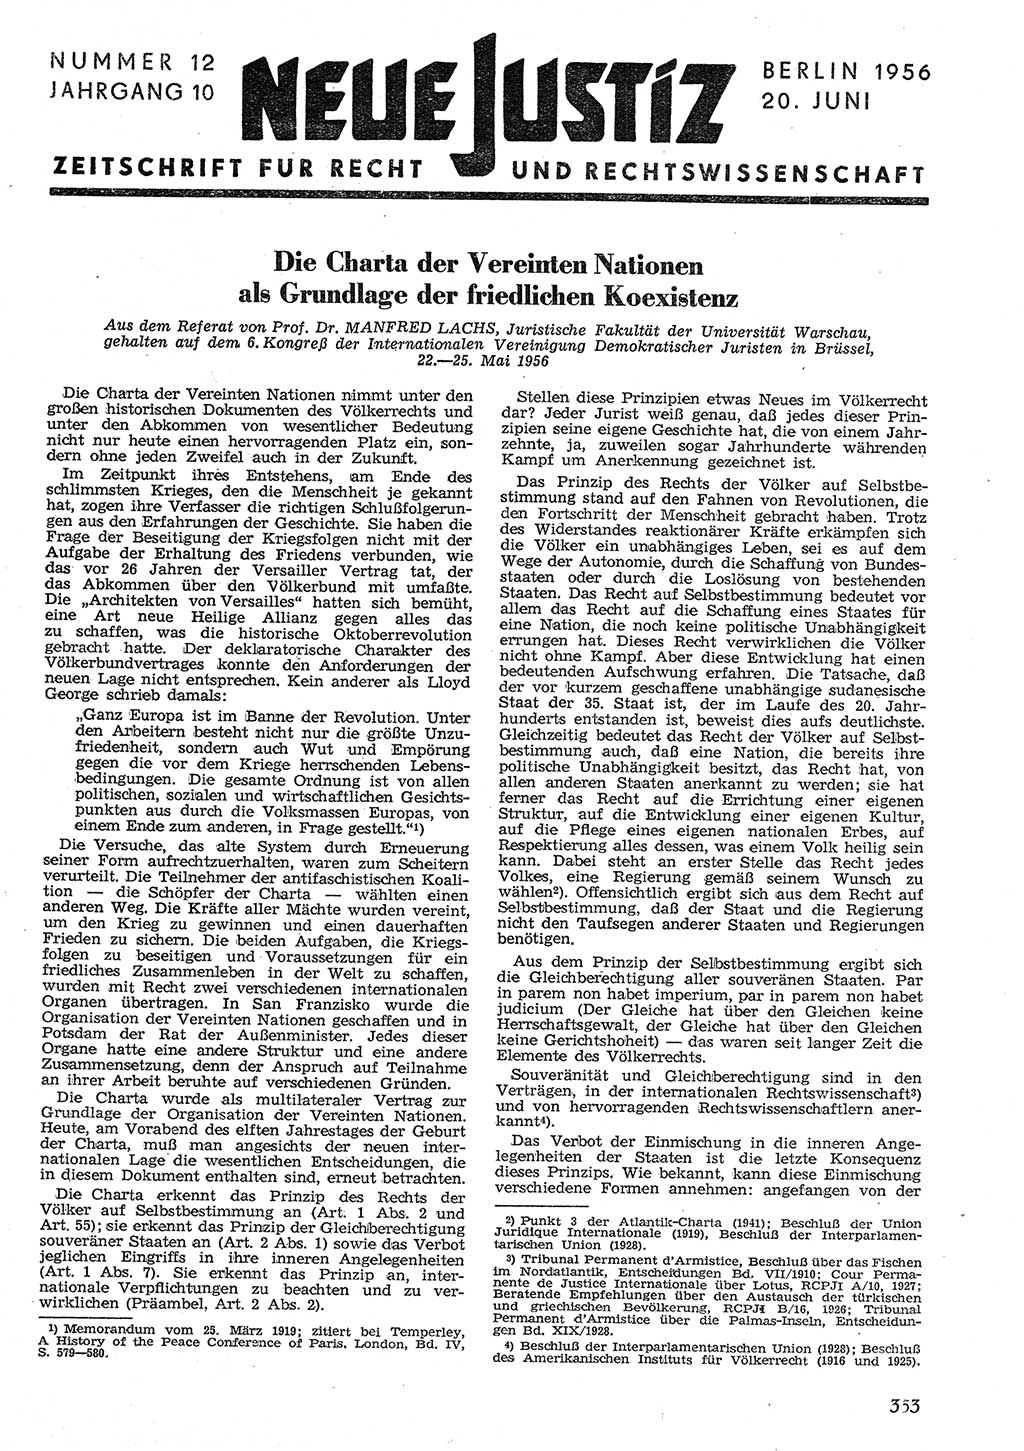 Neue Justiz (NJ), Zeitschrift für Recht und Rechtswissenschaft [Deutsche Demokratische Republik (DDR)], 10. Jahrgang 1956, Seite 353 (NJ DDR 1956, S. 353)